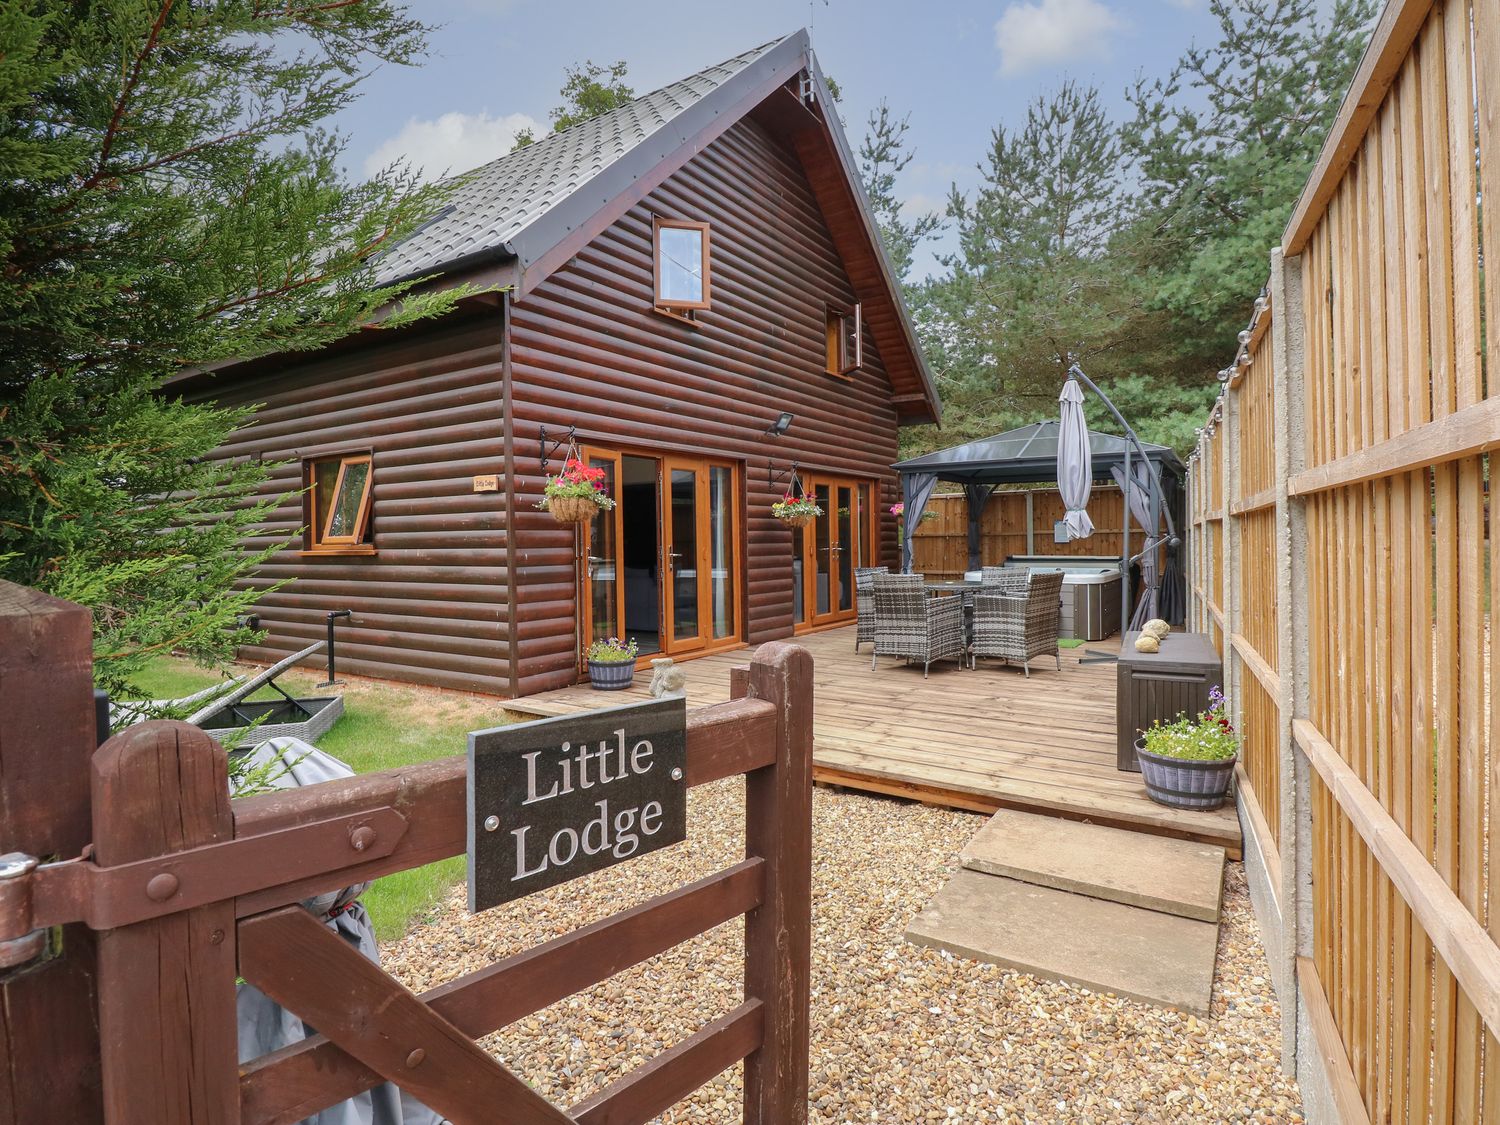 Little Lodge, King's Lynn